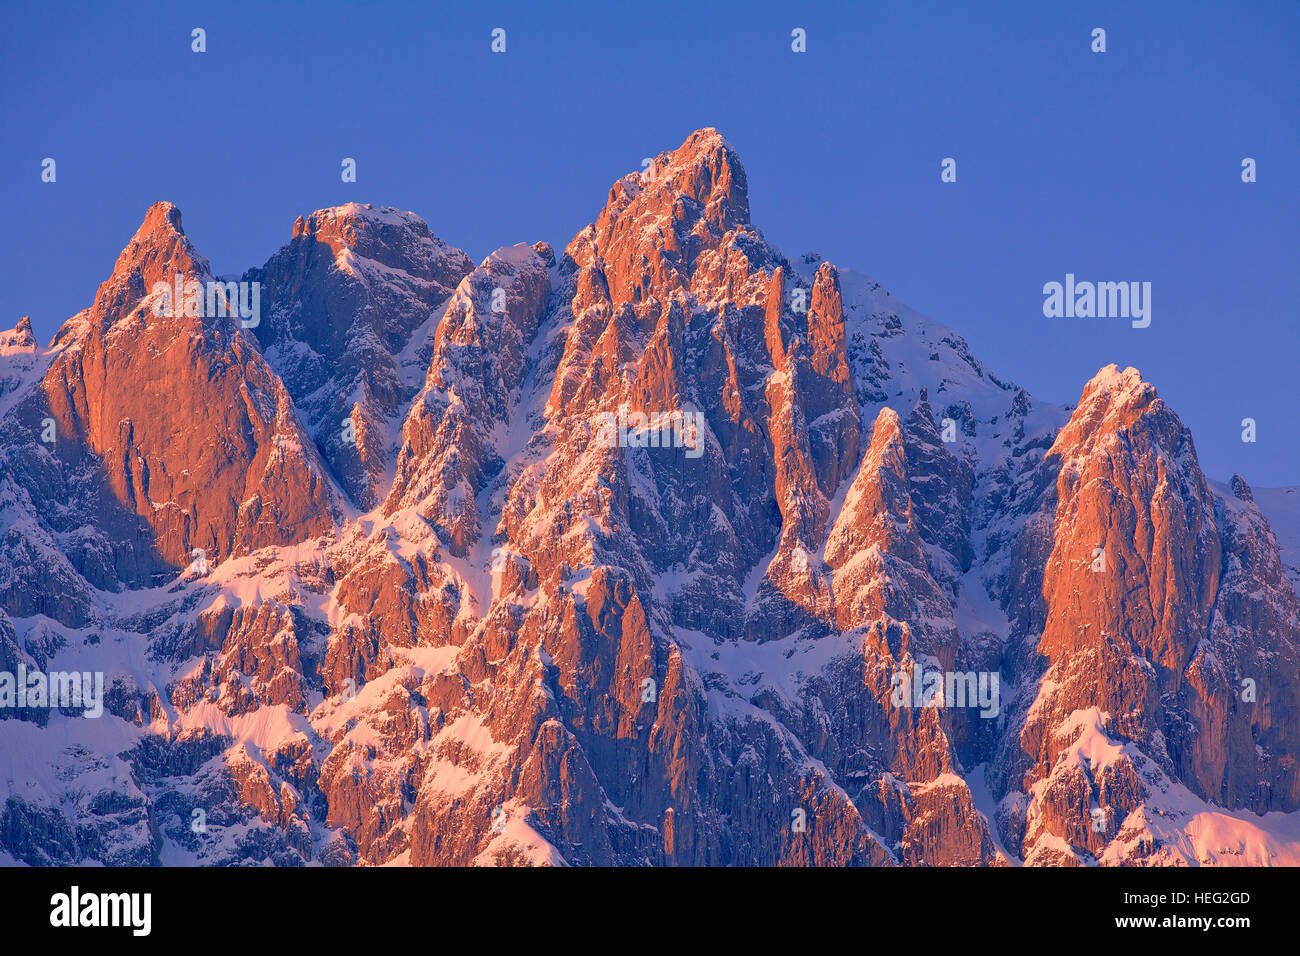 Autriche, Tyrol, Wilder Kaiser (montagne), Ackerlspitze (montagne) dans la lumière du soir Banque D'Images